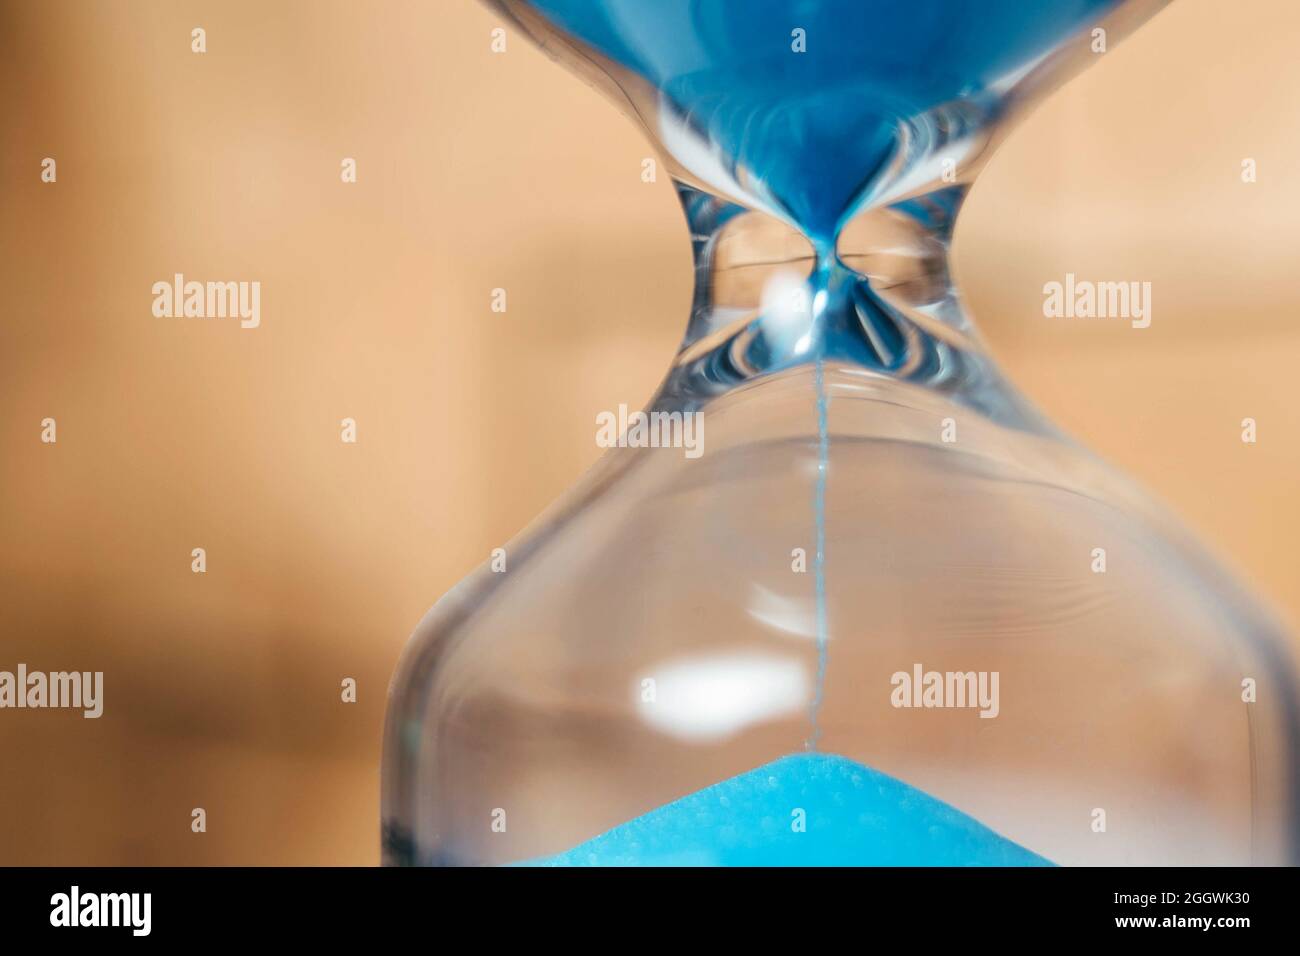 Arena que corre a través de los bulbos de un reloj de arena que mide el tiempo que pasa en una cuenta atrás a una fecha límite, sobre un fondo oscuro con espacio de copia. Foto de stock